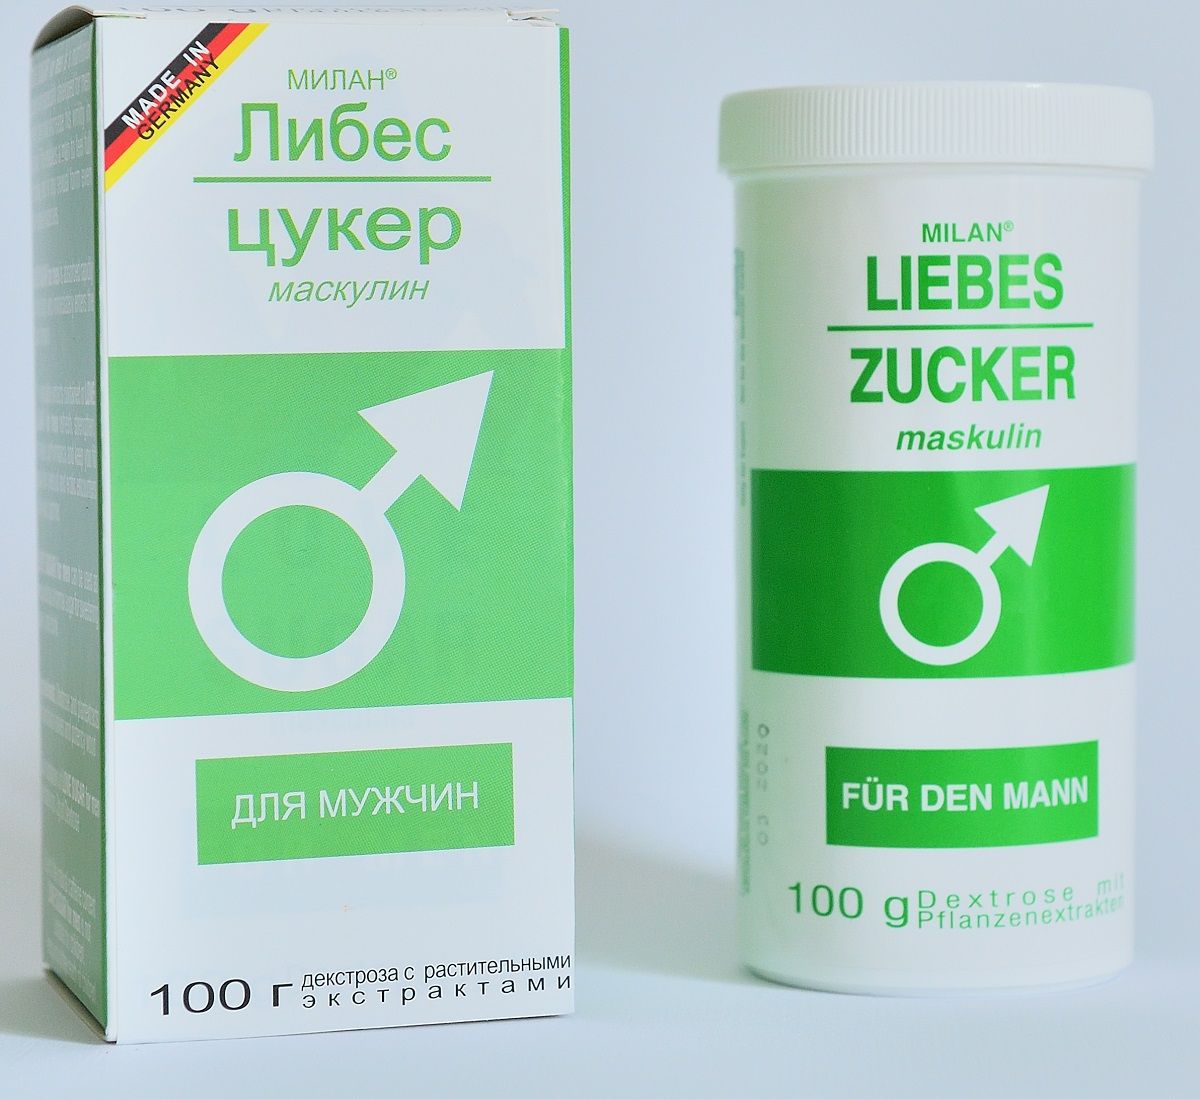 Сахар любви для мужчин Liebes-Zucker maskulin - 100 гр. - фото 154504